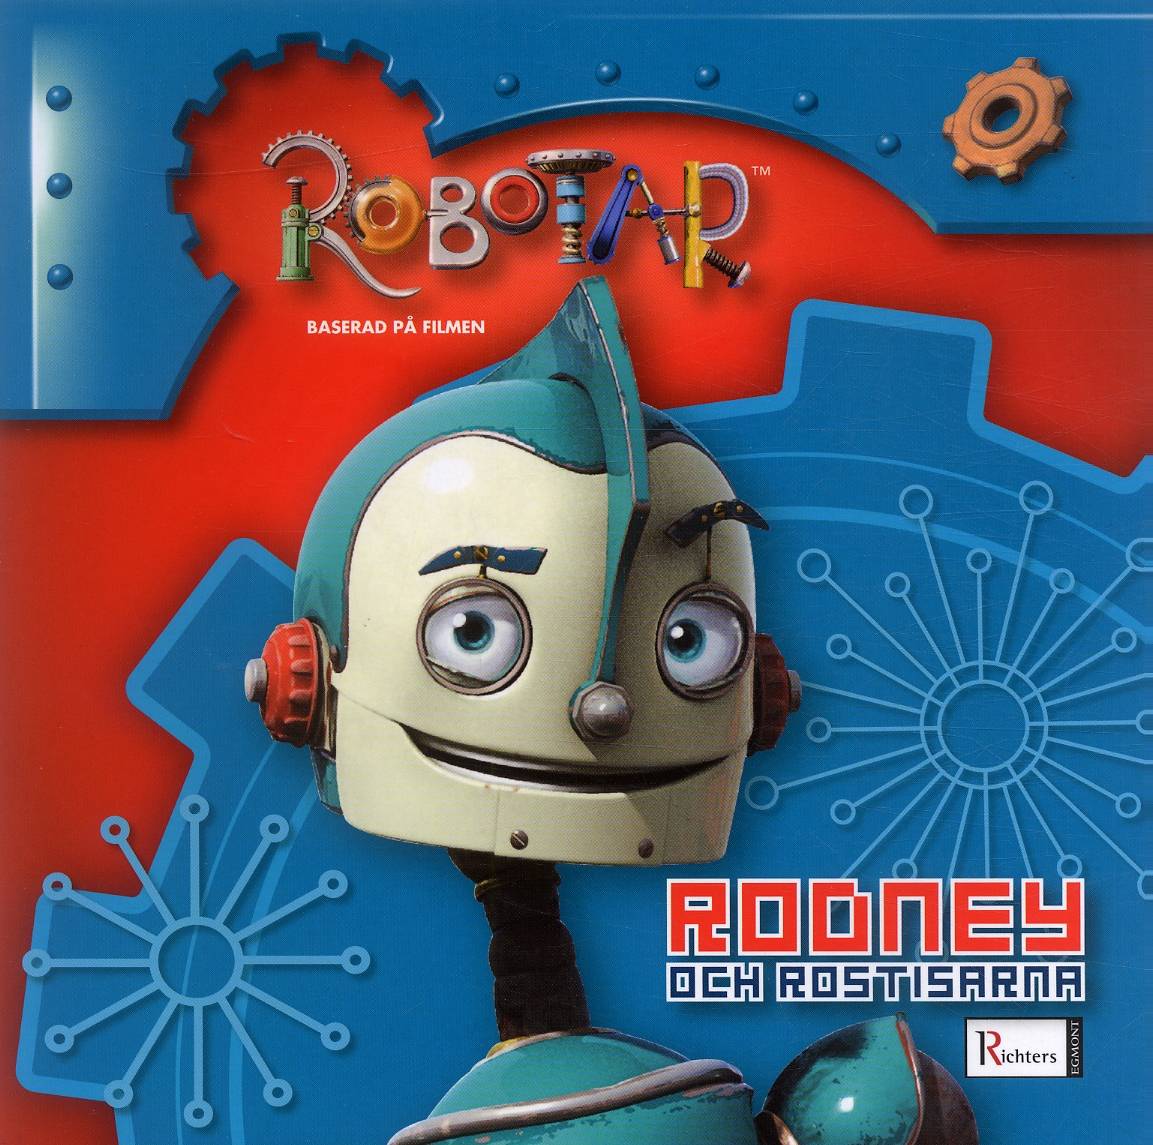 Robotar - Rodney och rostisarna